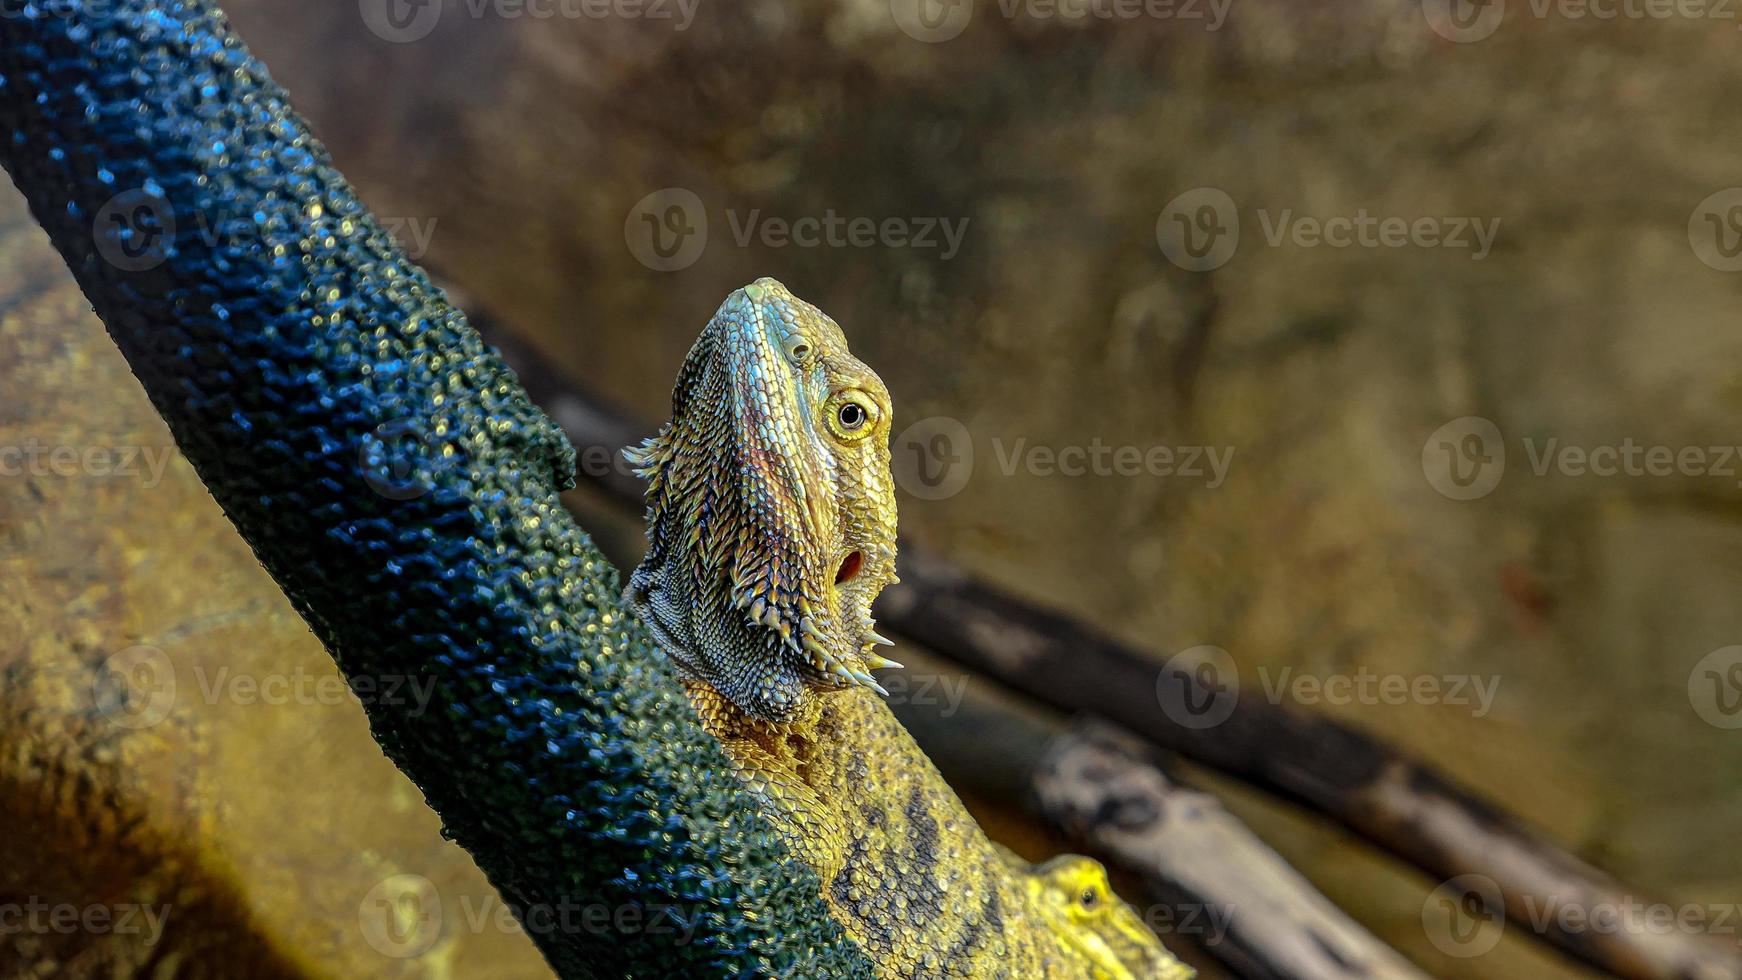 Lizard portrait in the zoo photo